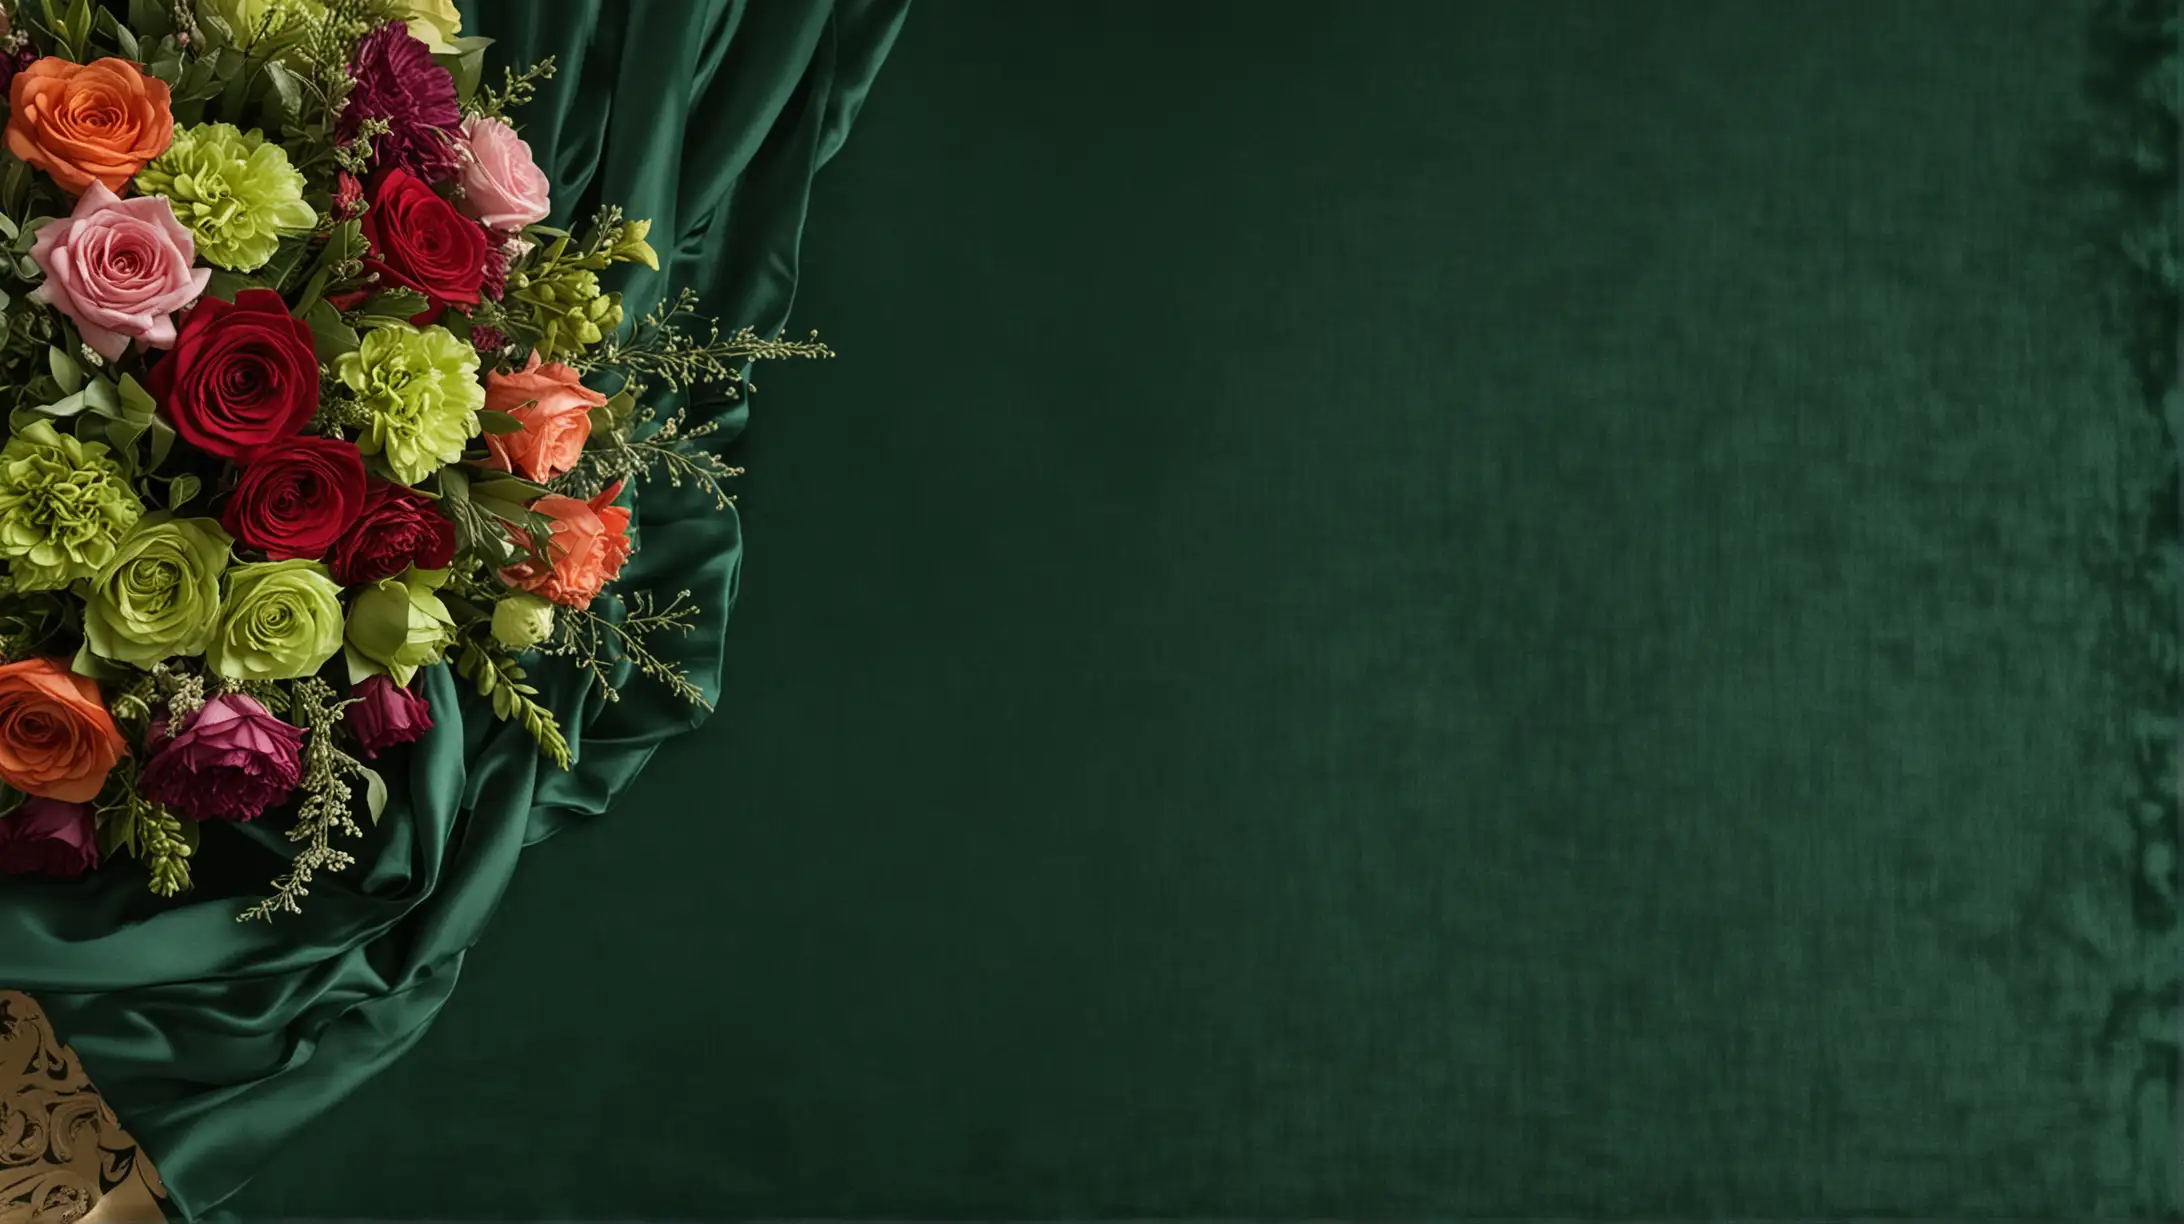 Elegant Funeral Floral Arrangement with Green Velvet Background